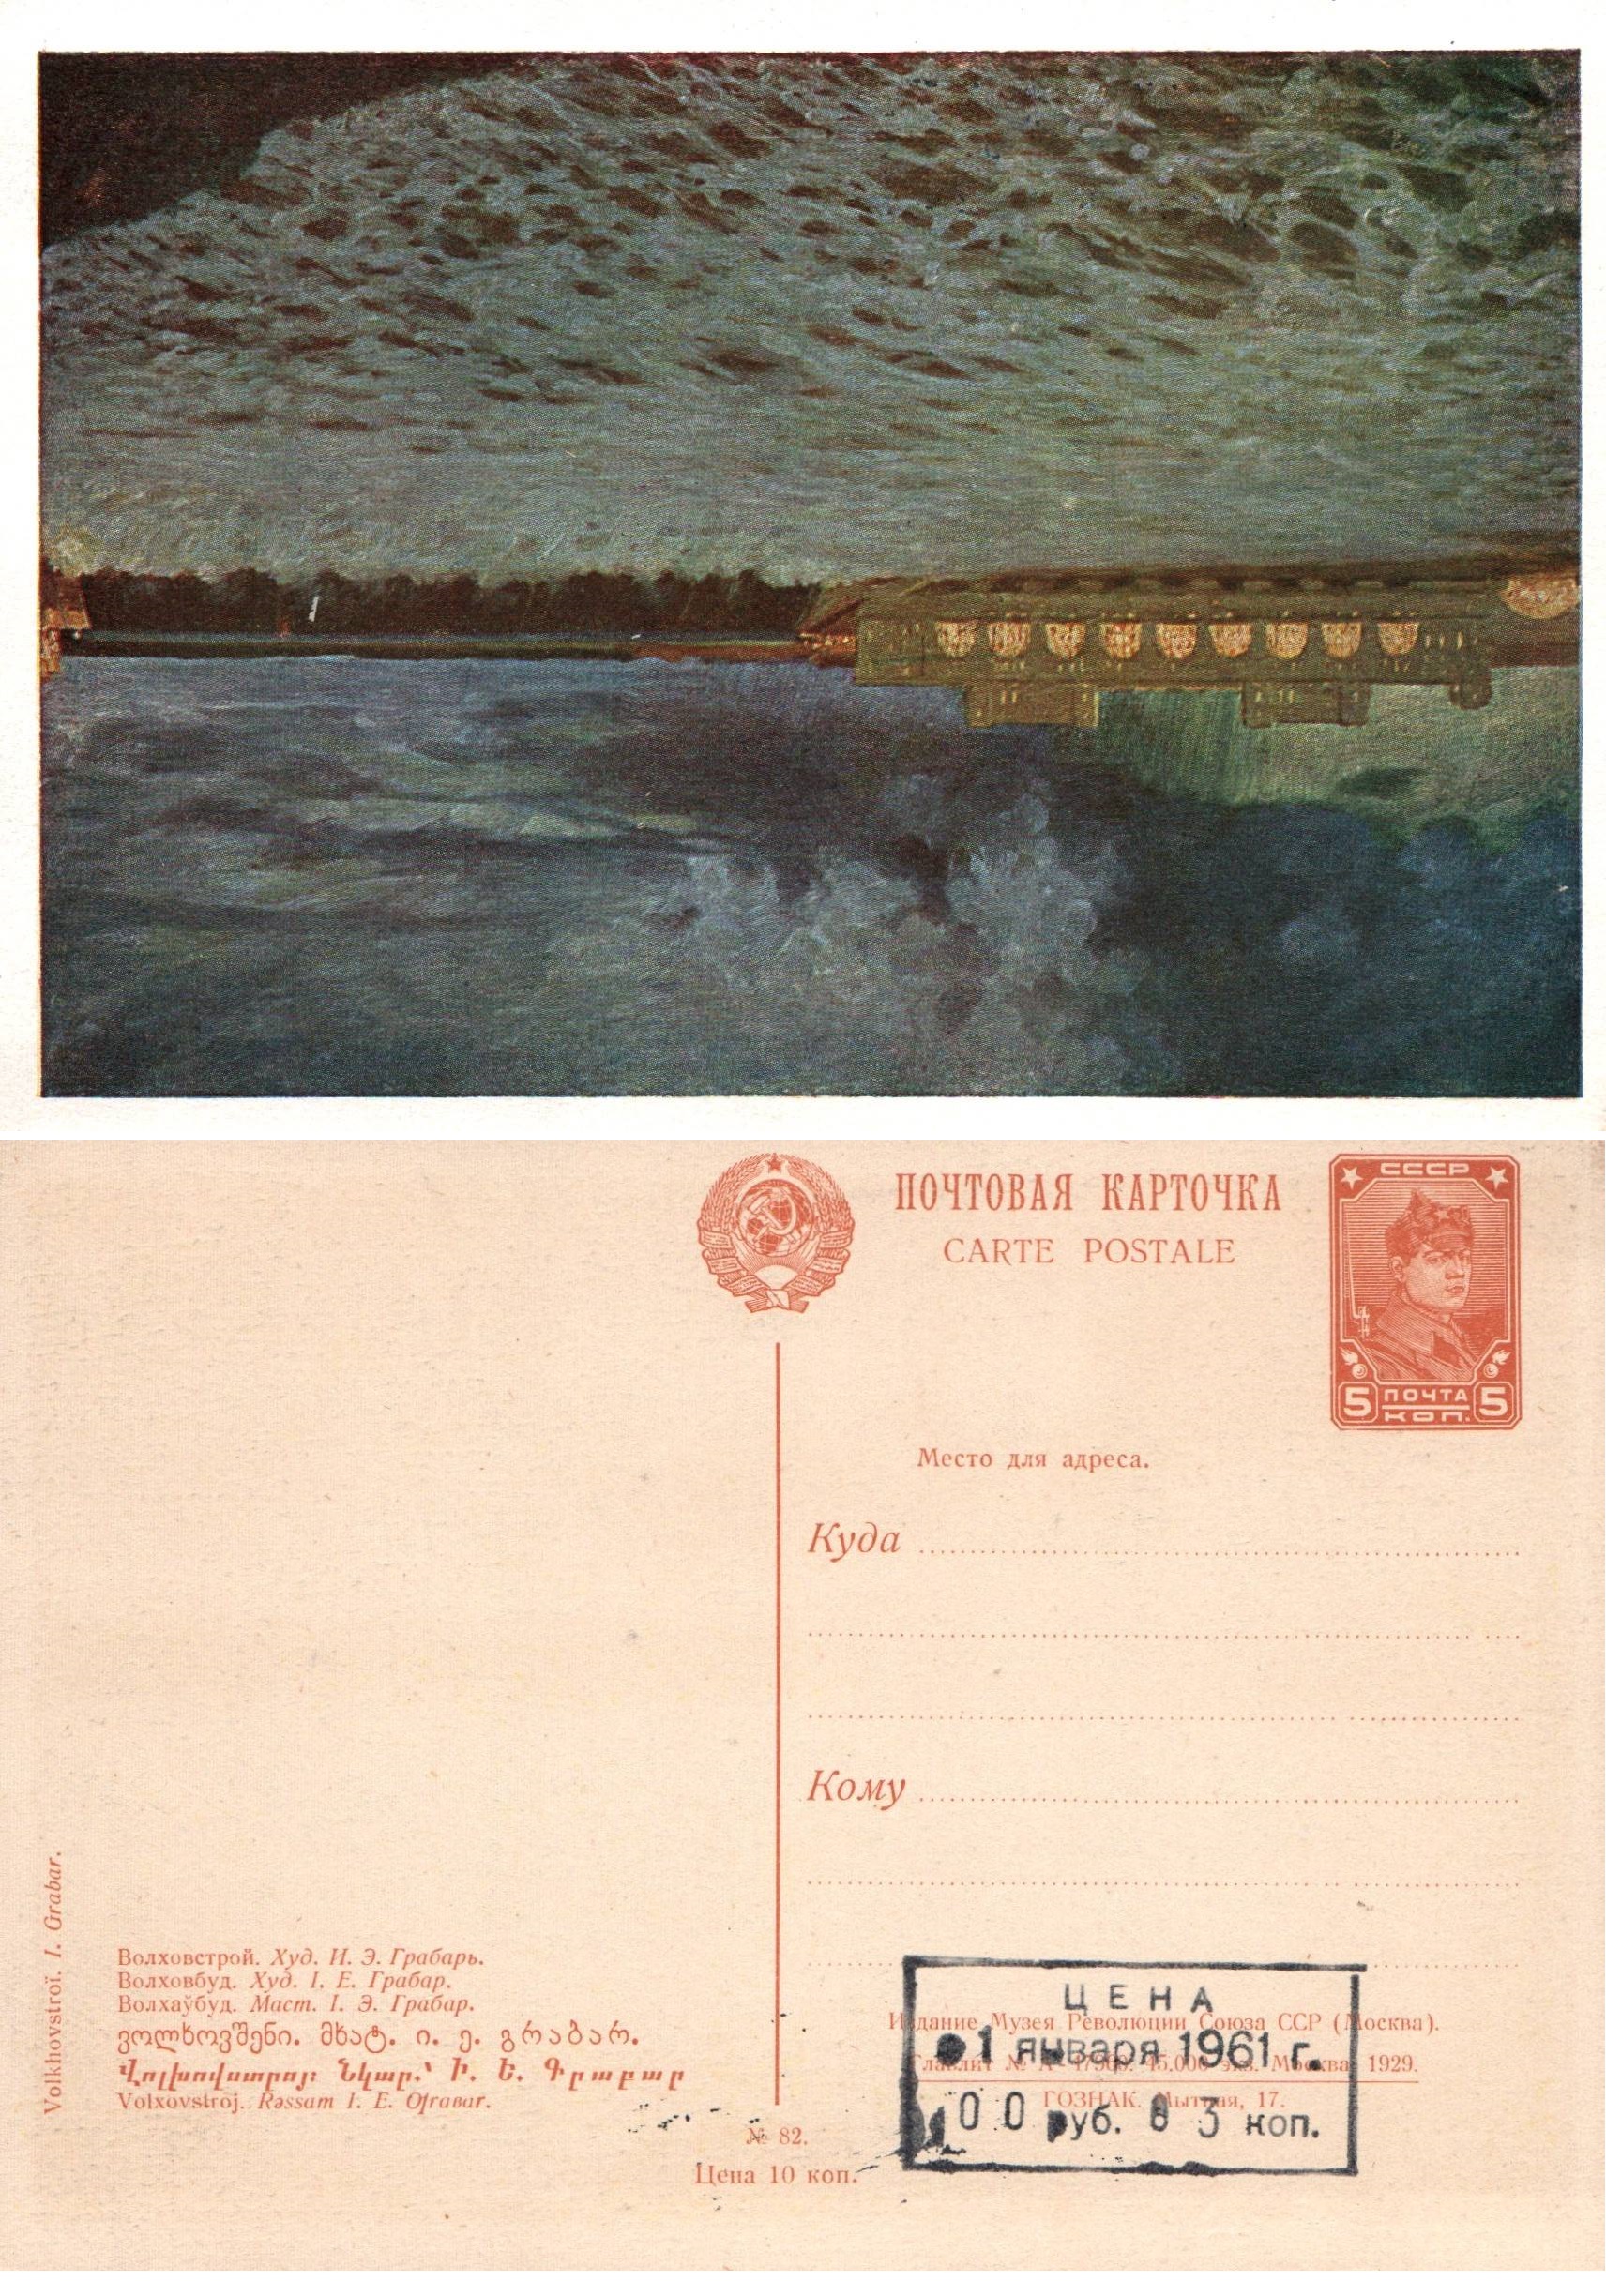 Postal Stationery - Soviet Union Scott 2682 Michel P94.82 